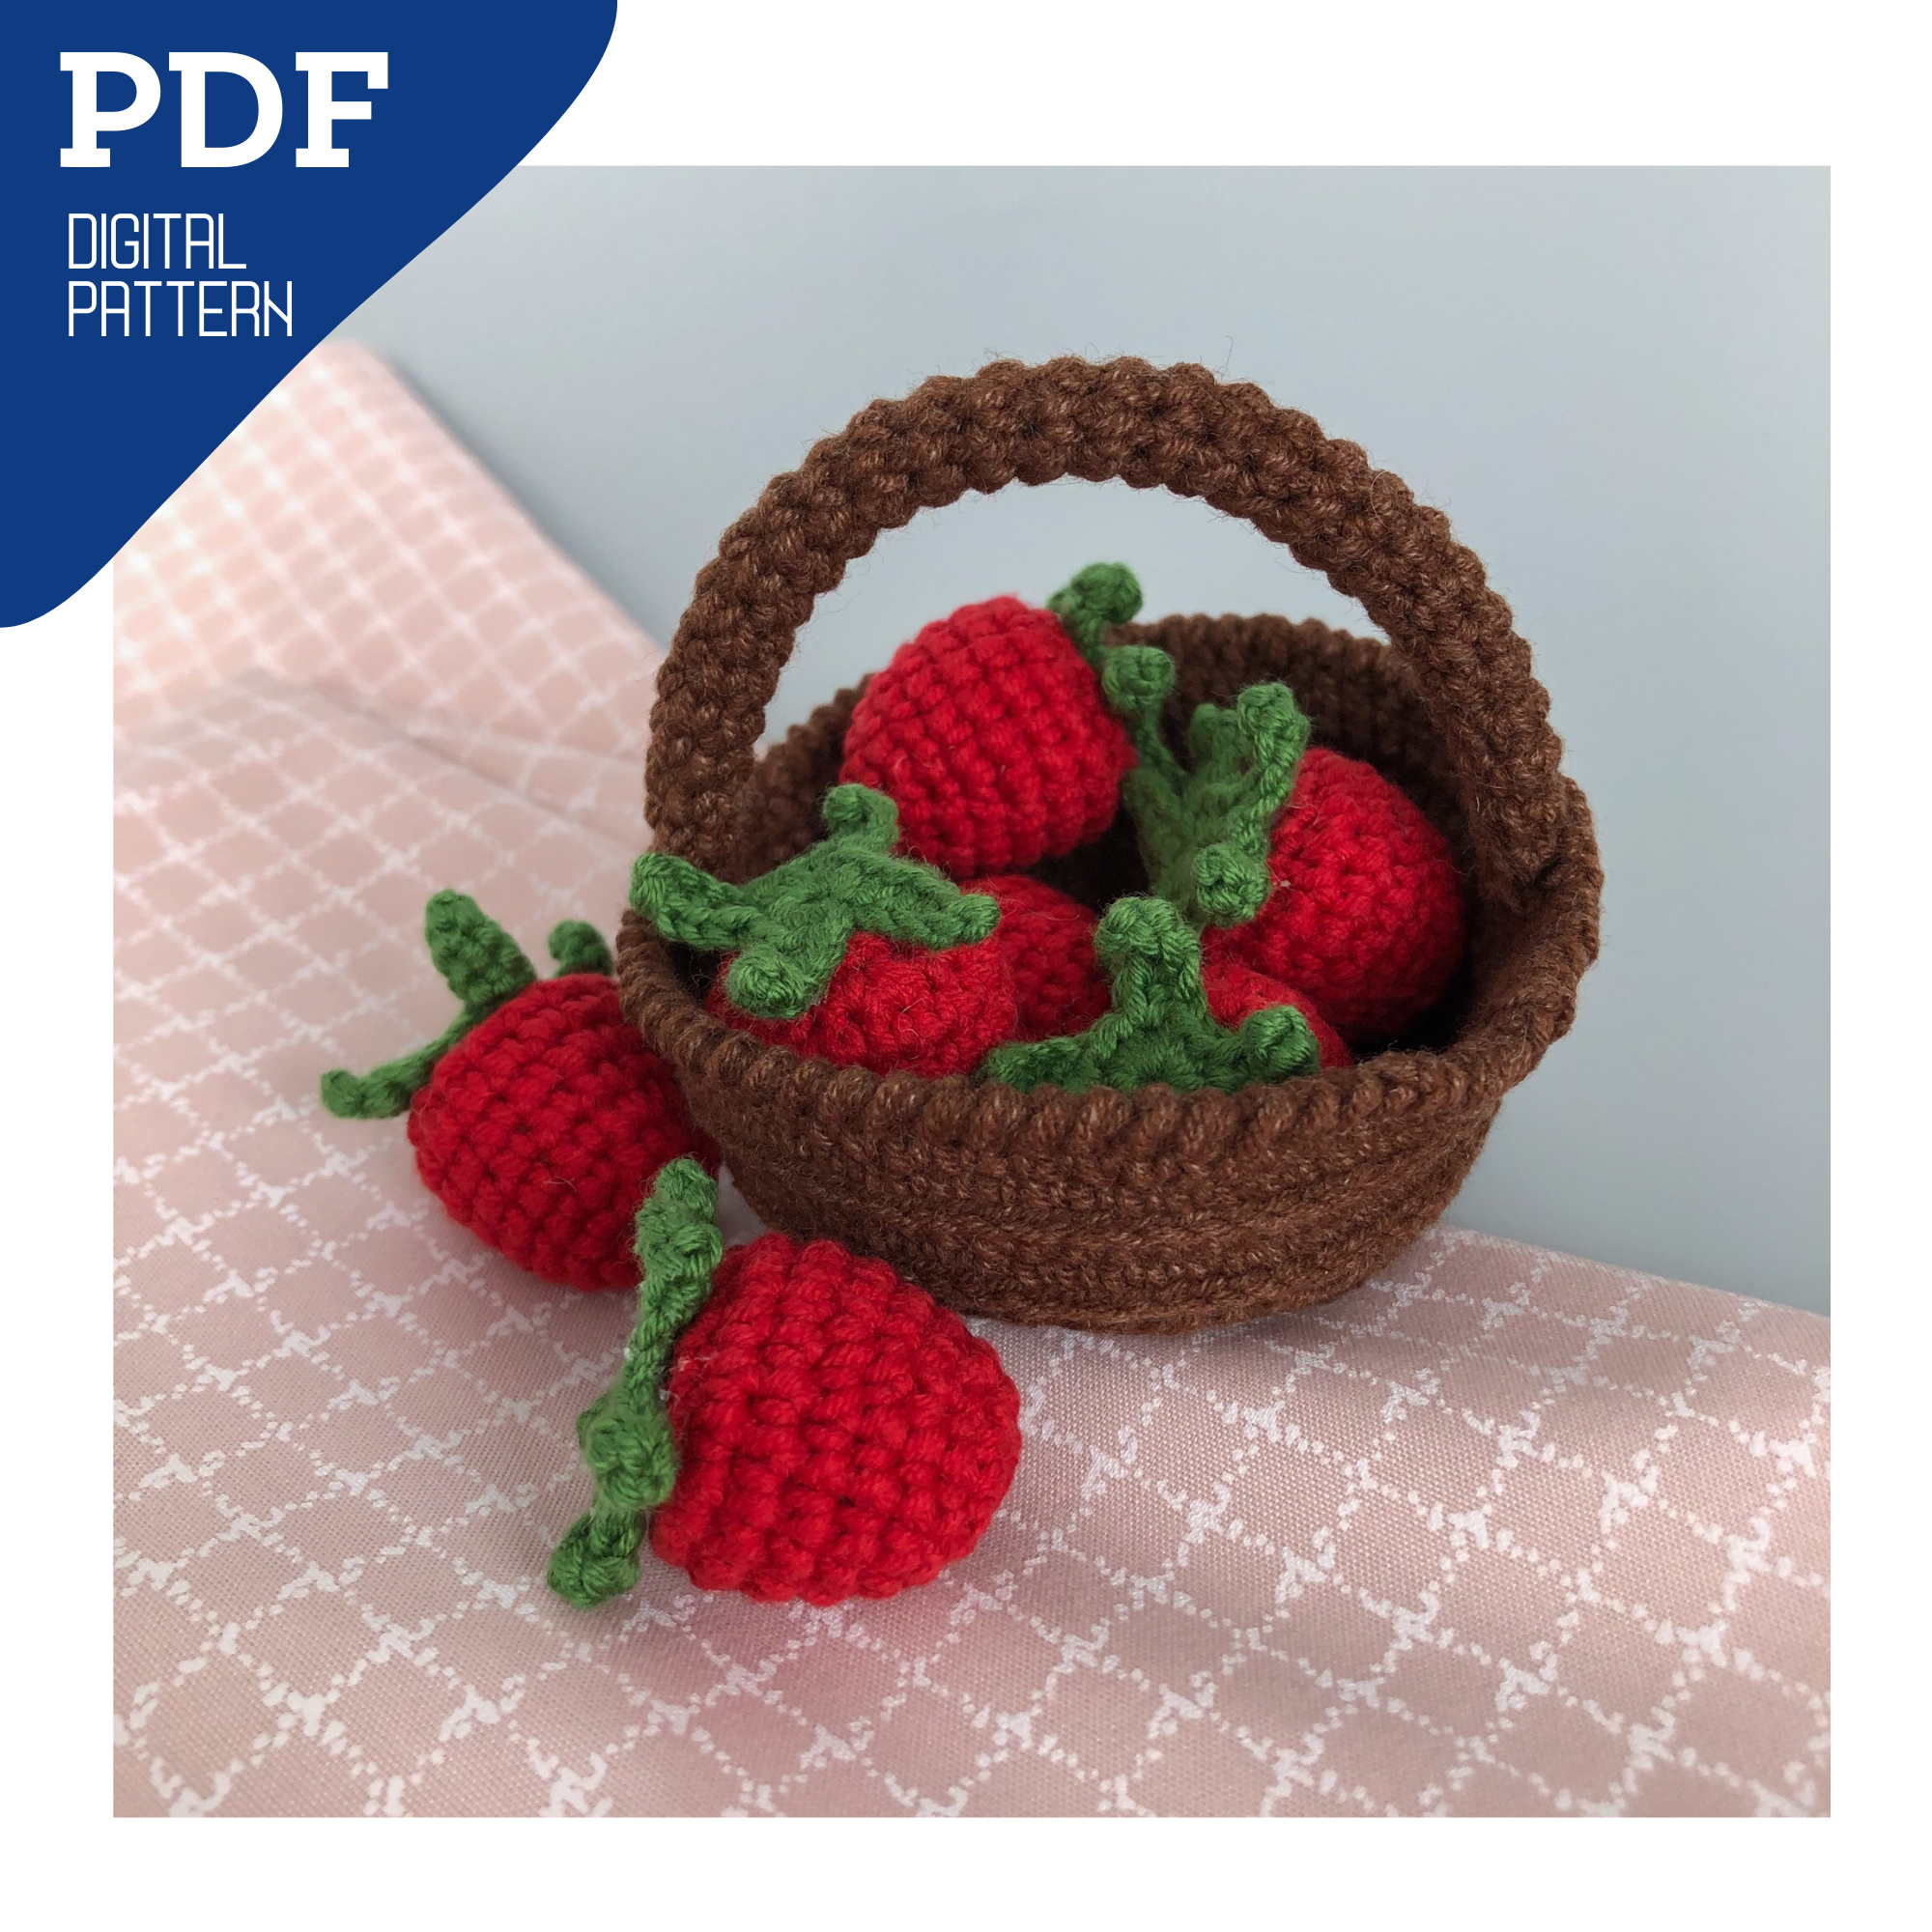 Strawberry miniature book crochet pattern  Crochet projects, Crochet,  Crochet books